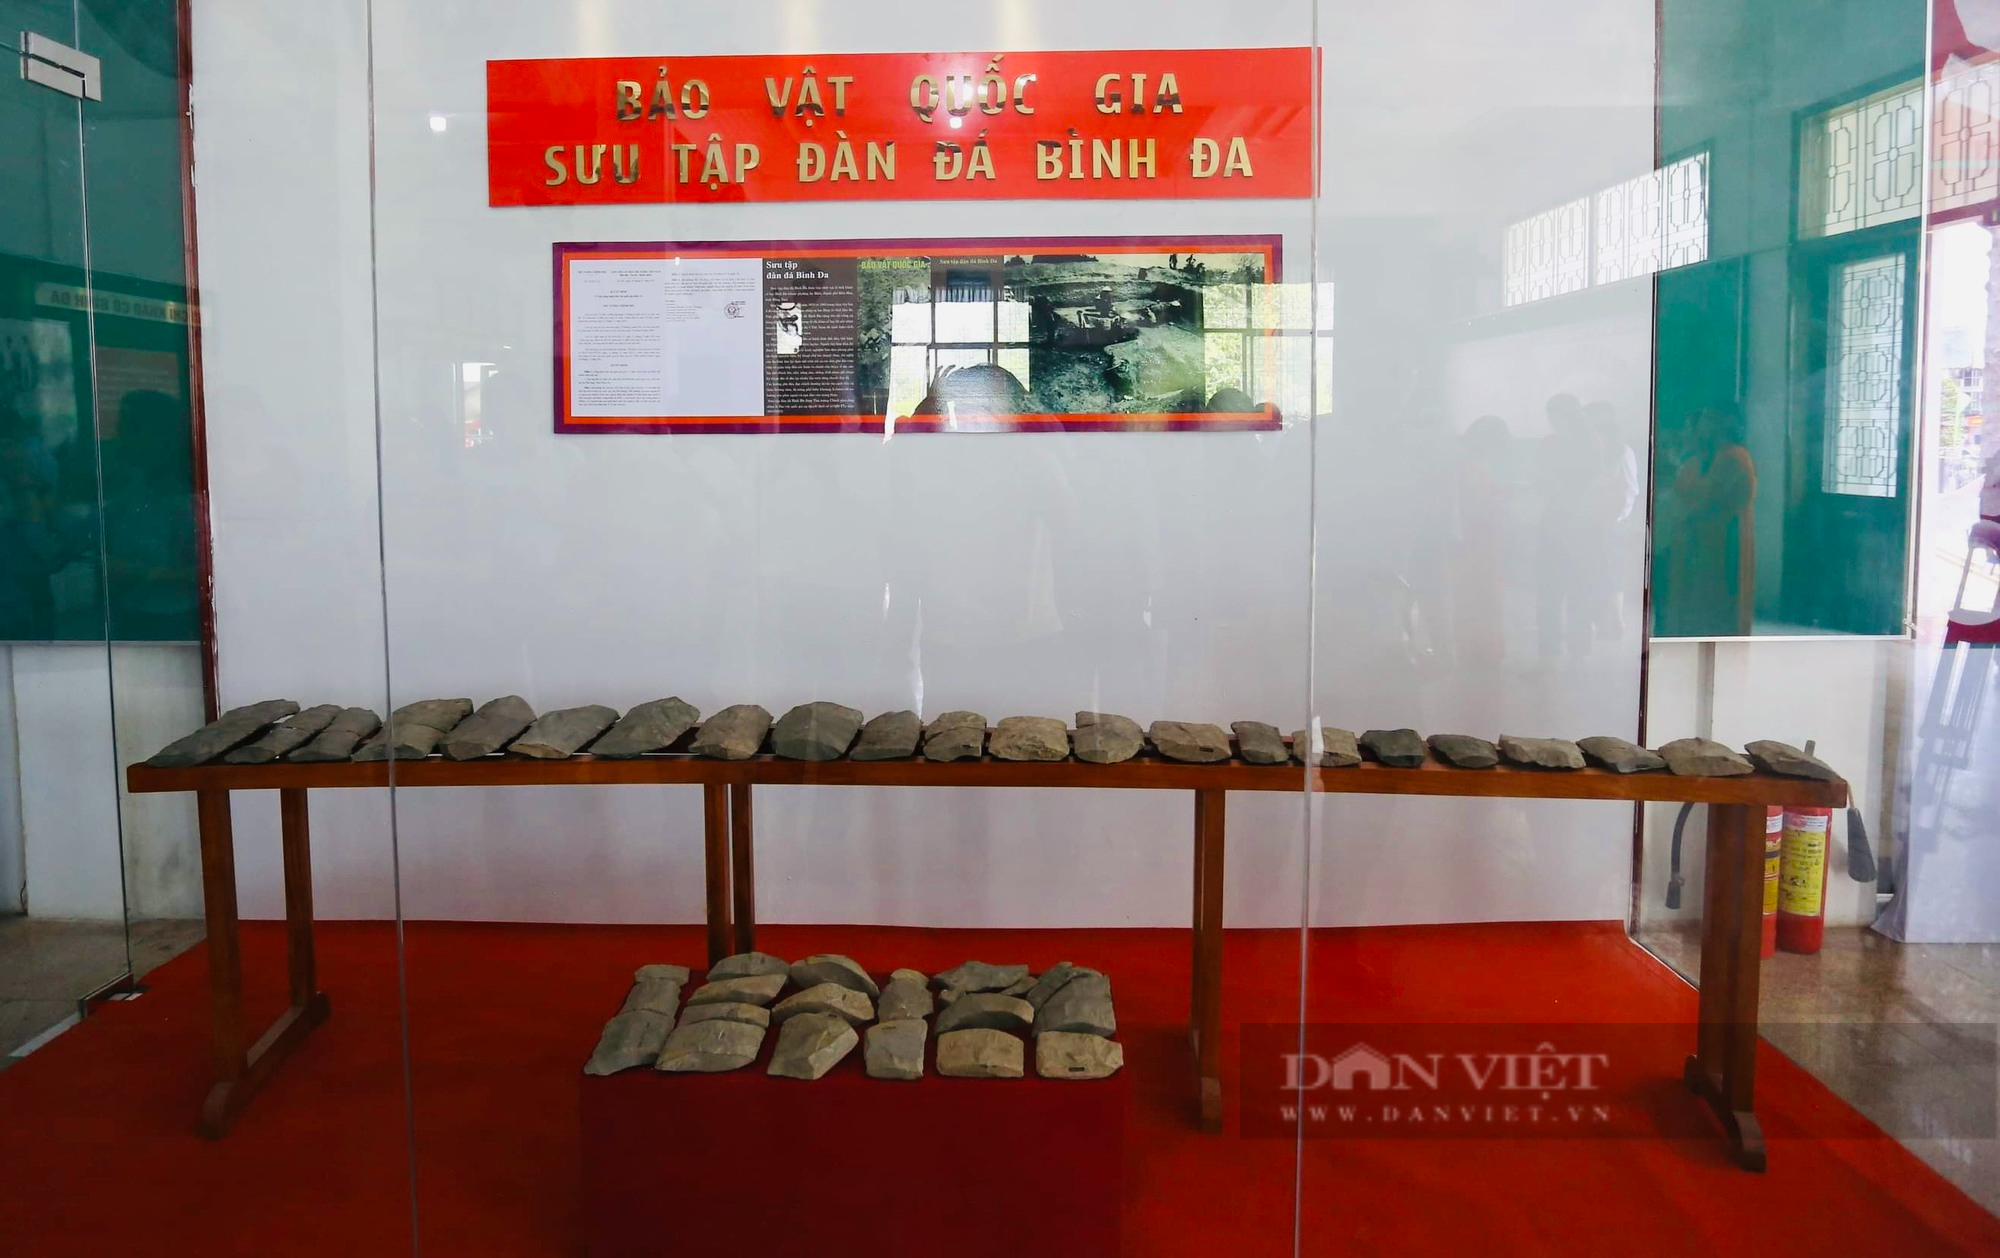 Đồng Nai: Công bố quyết định công nhận bộ sưu tập đàn đá Bình Đa là bảo vật quốc gia - Ảnh 1.